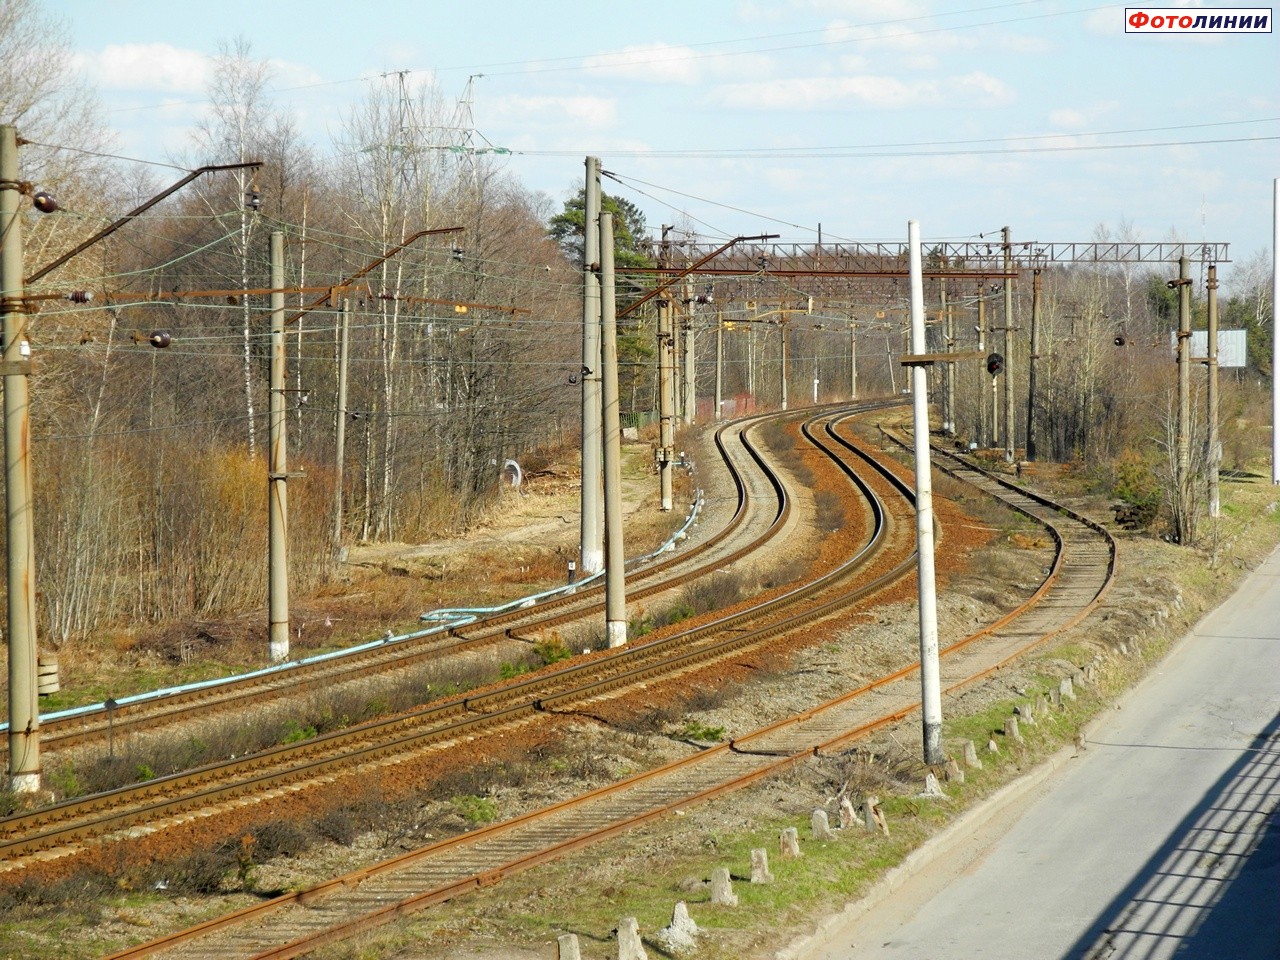 Вид в сторону грузовой части станции с Приморского шоссе со стороны Сестрорецка